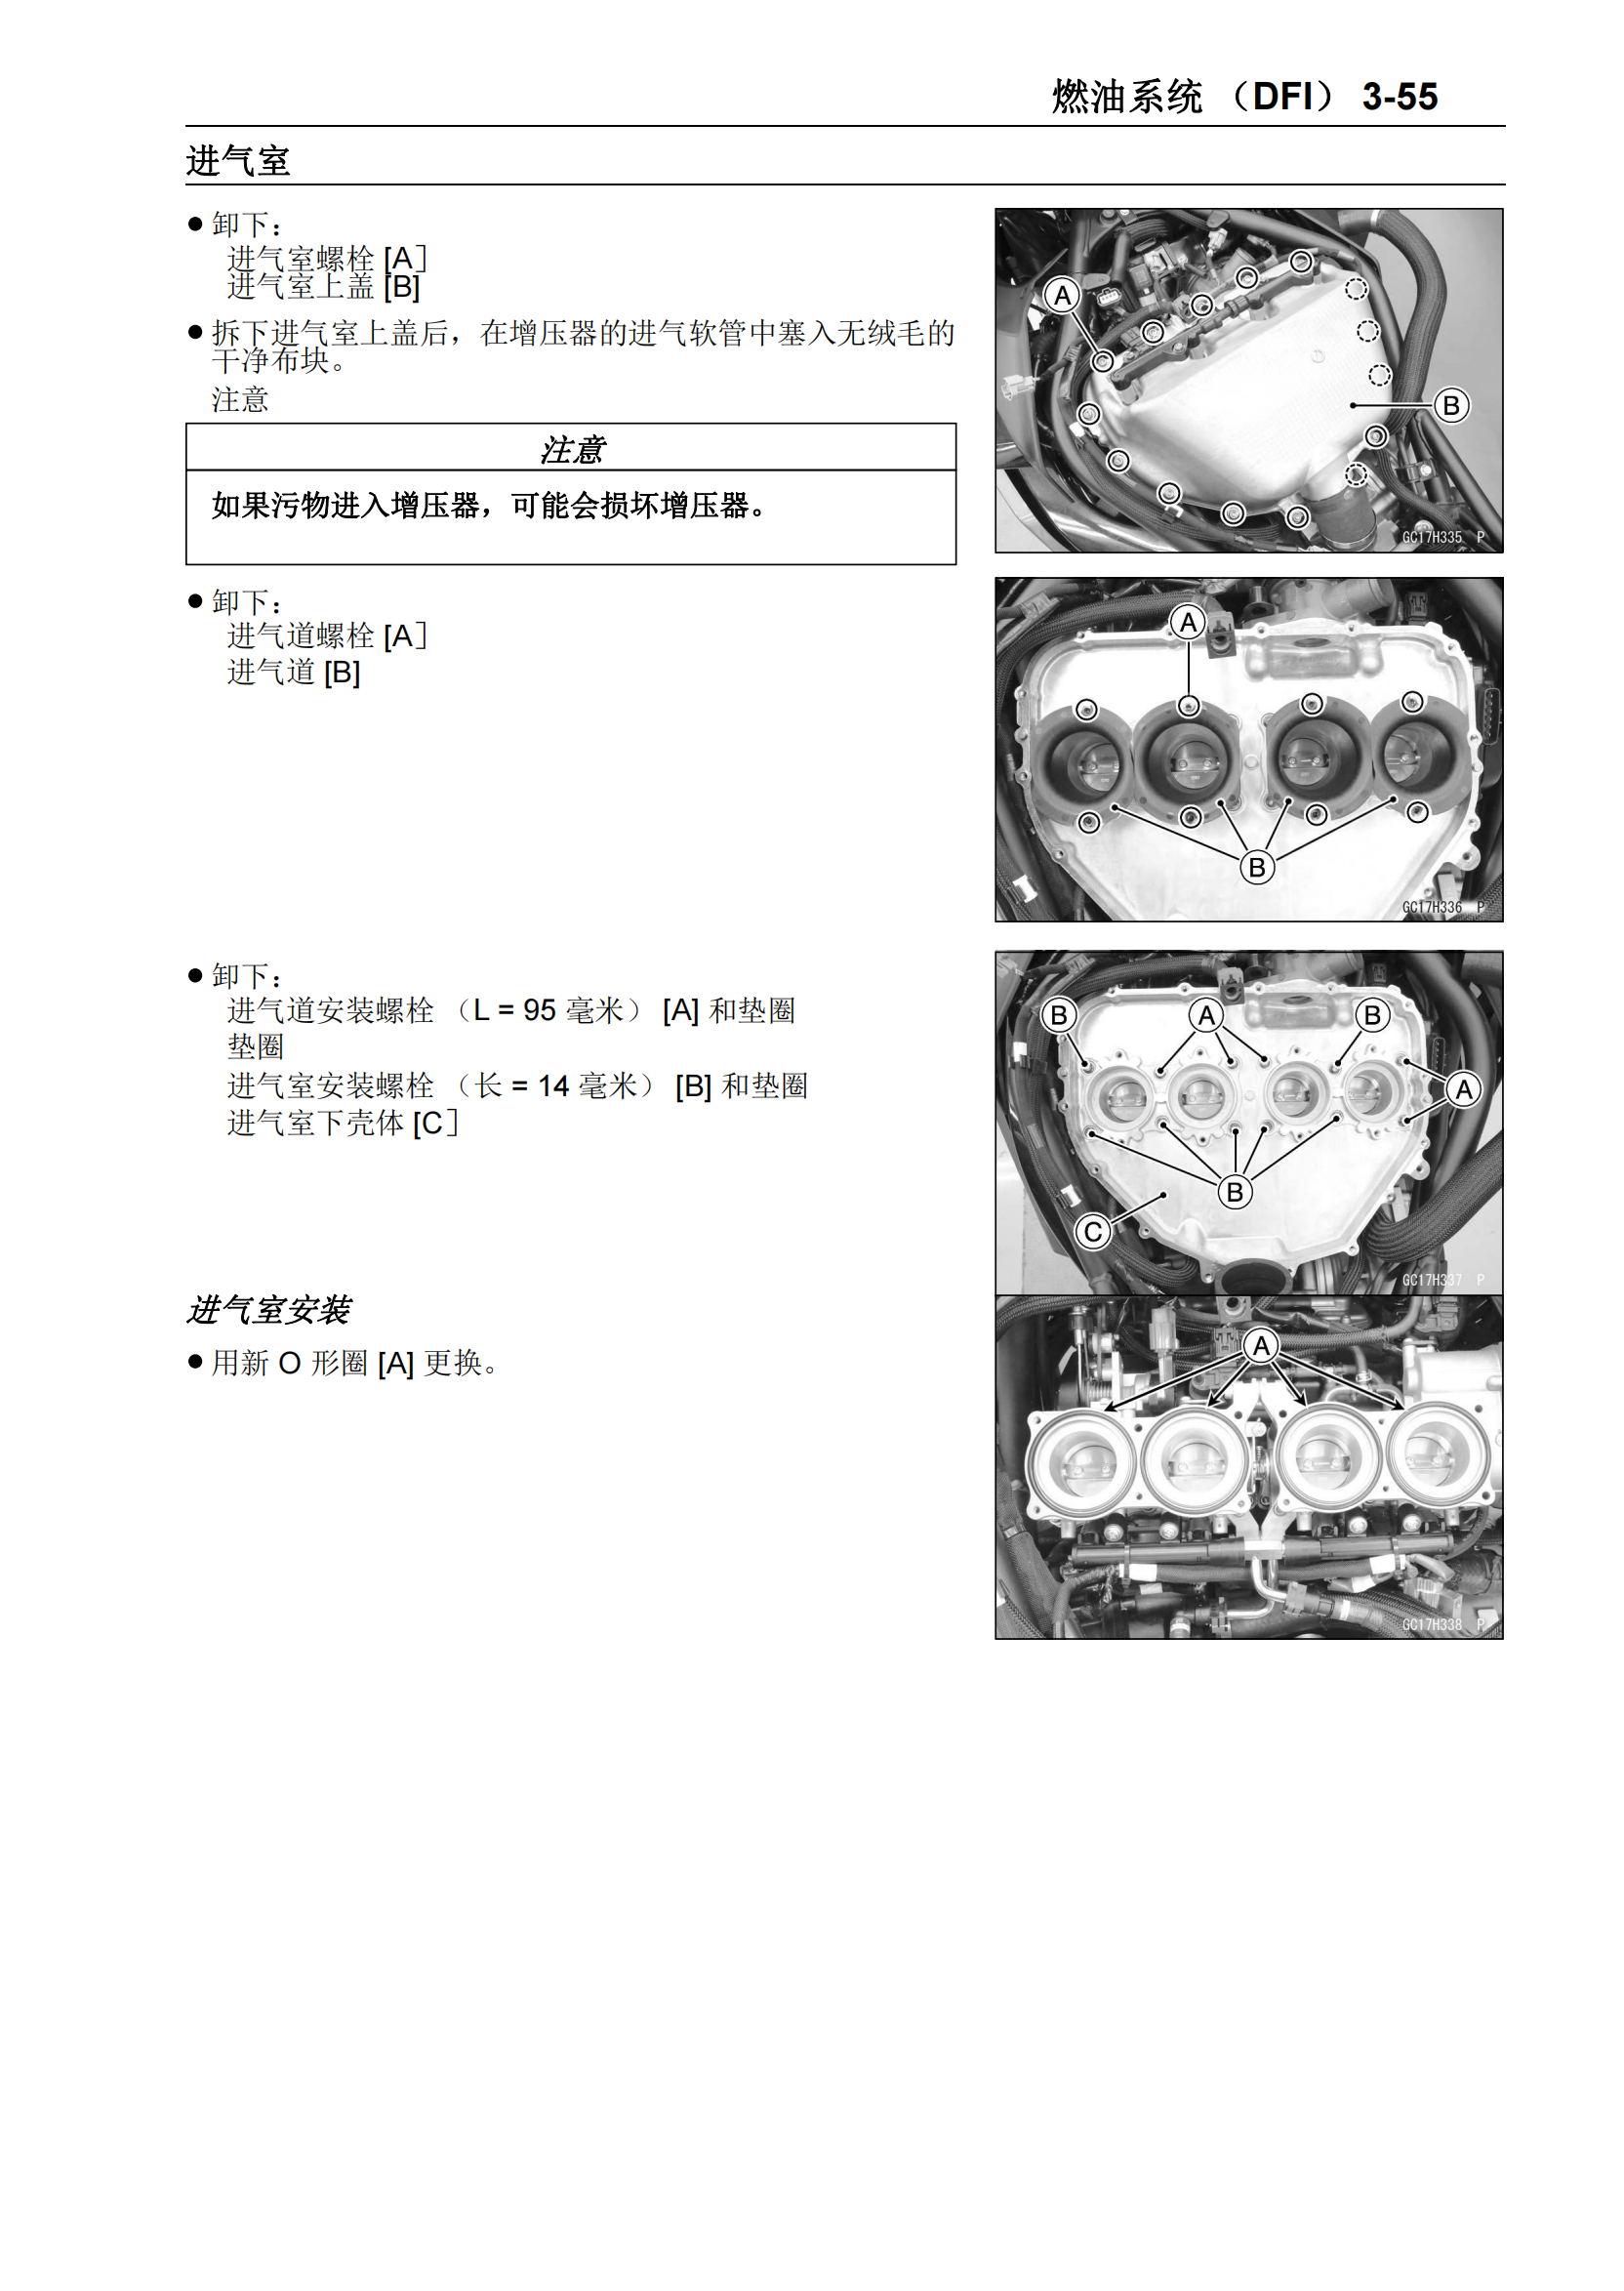 简体中文2018-2020年川崎 ninja H2SX kawasaki ninja h2 sx维修手册插图3